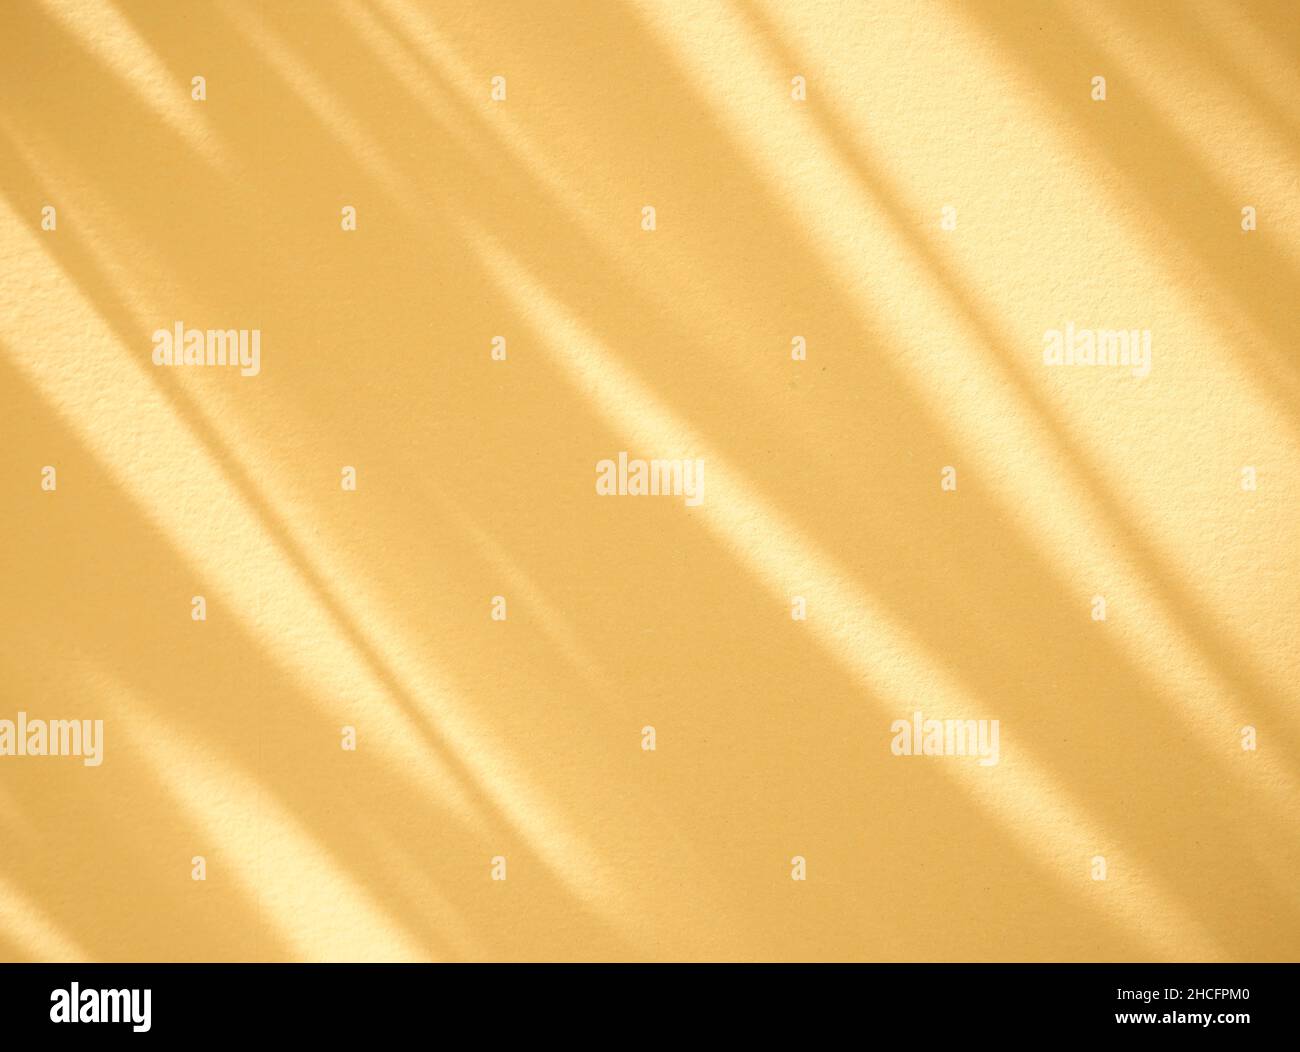 Organisches Kupfergold, verbranntes gelbes Schattenfarbüberzug auf weißem Hintergrund. Natürlicher, diagonaler Overlay-Effekt für Design, flach liegend, Modell. Stockfoto